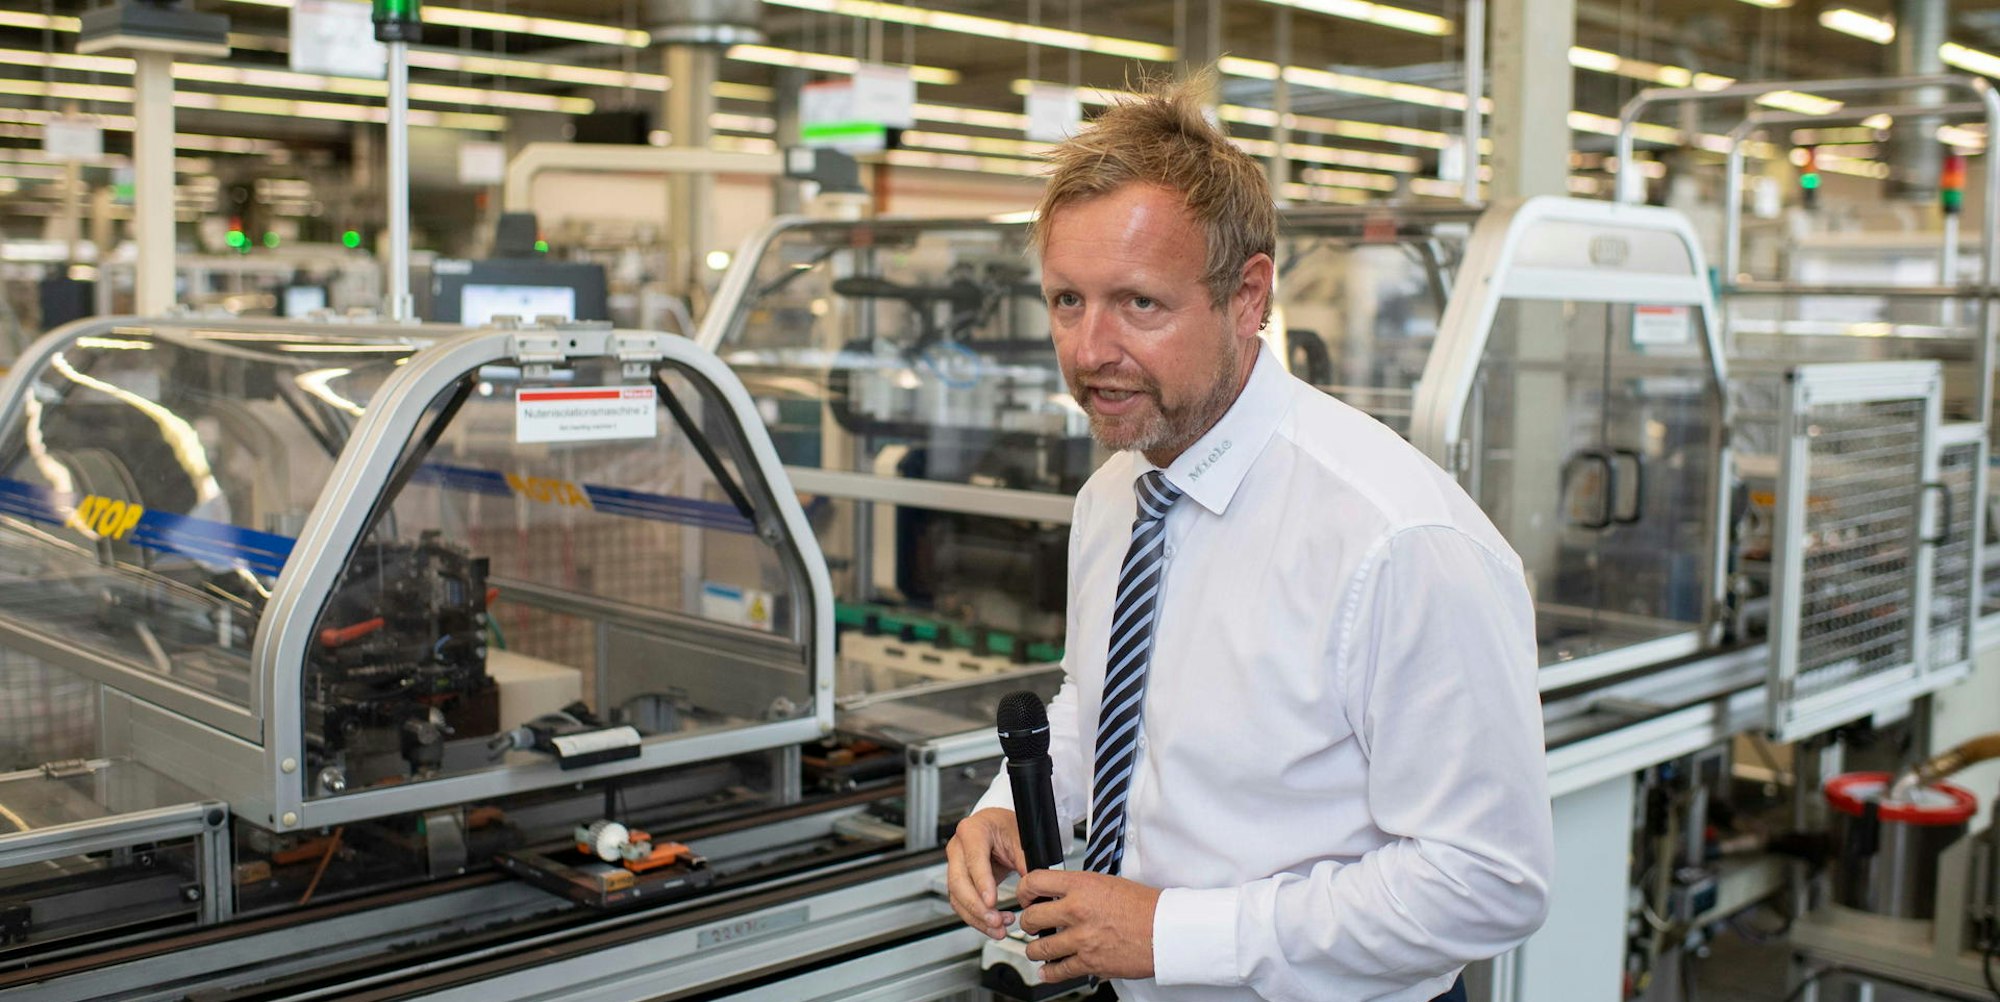 Erfreut sich jeden Tag aufs Neue an den technischen Möglichkeiten: Jürgen Zdunek ist der Leiter der Fertigungshalle, in der Produktionslinien von bis zu 40 Metern stehen.